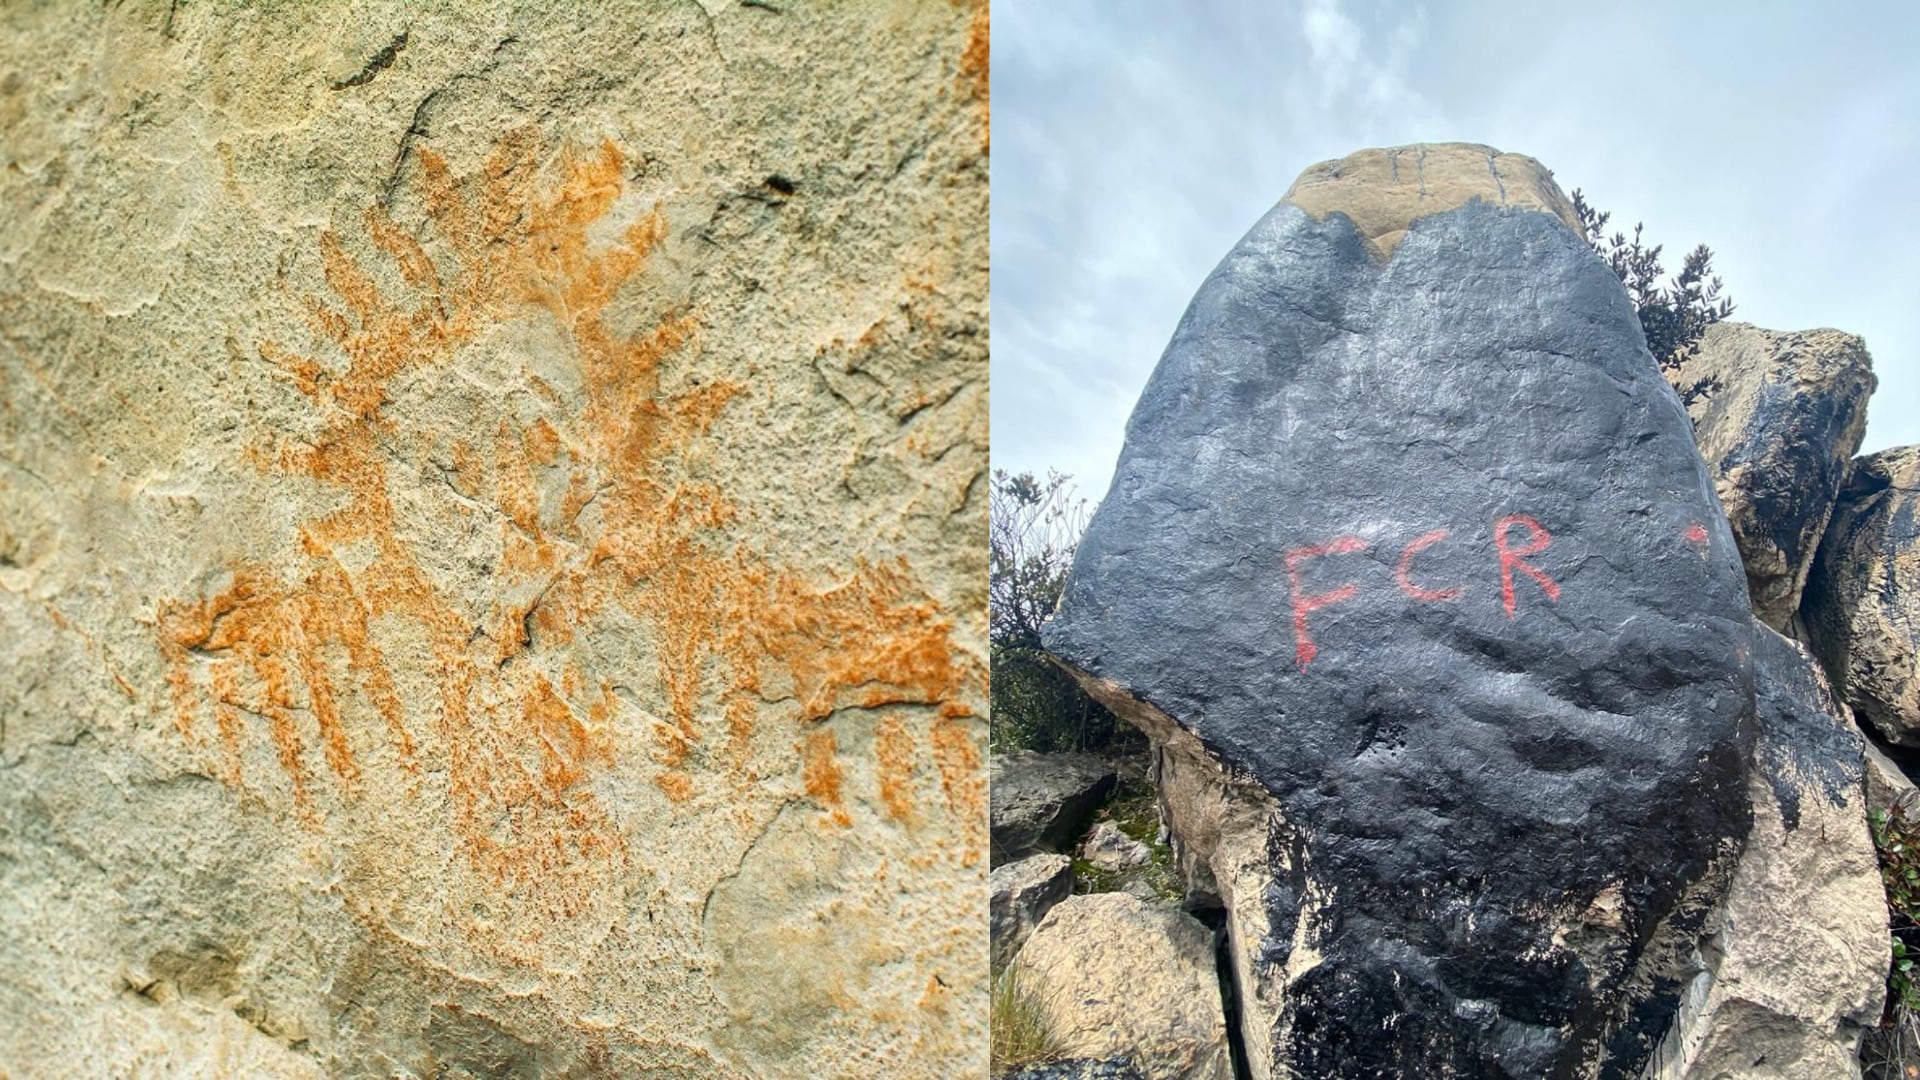 indignación por ataque con pintura a pictograma de más de 12.000 años de historia